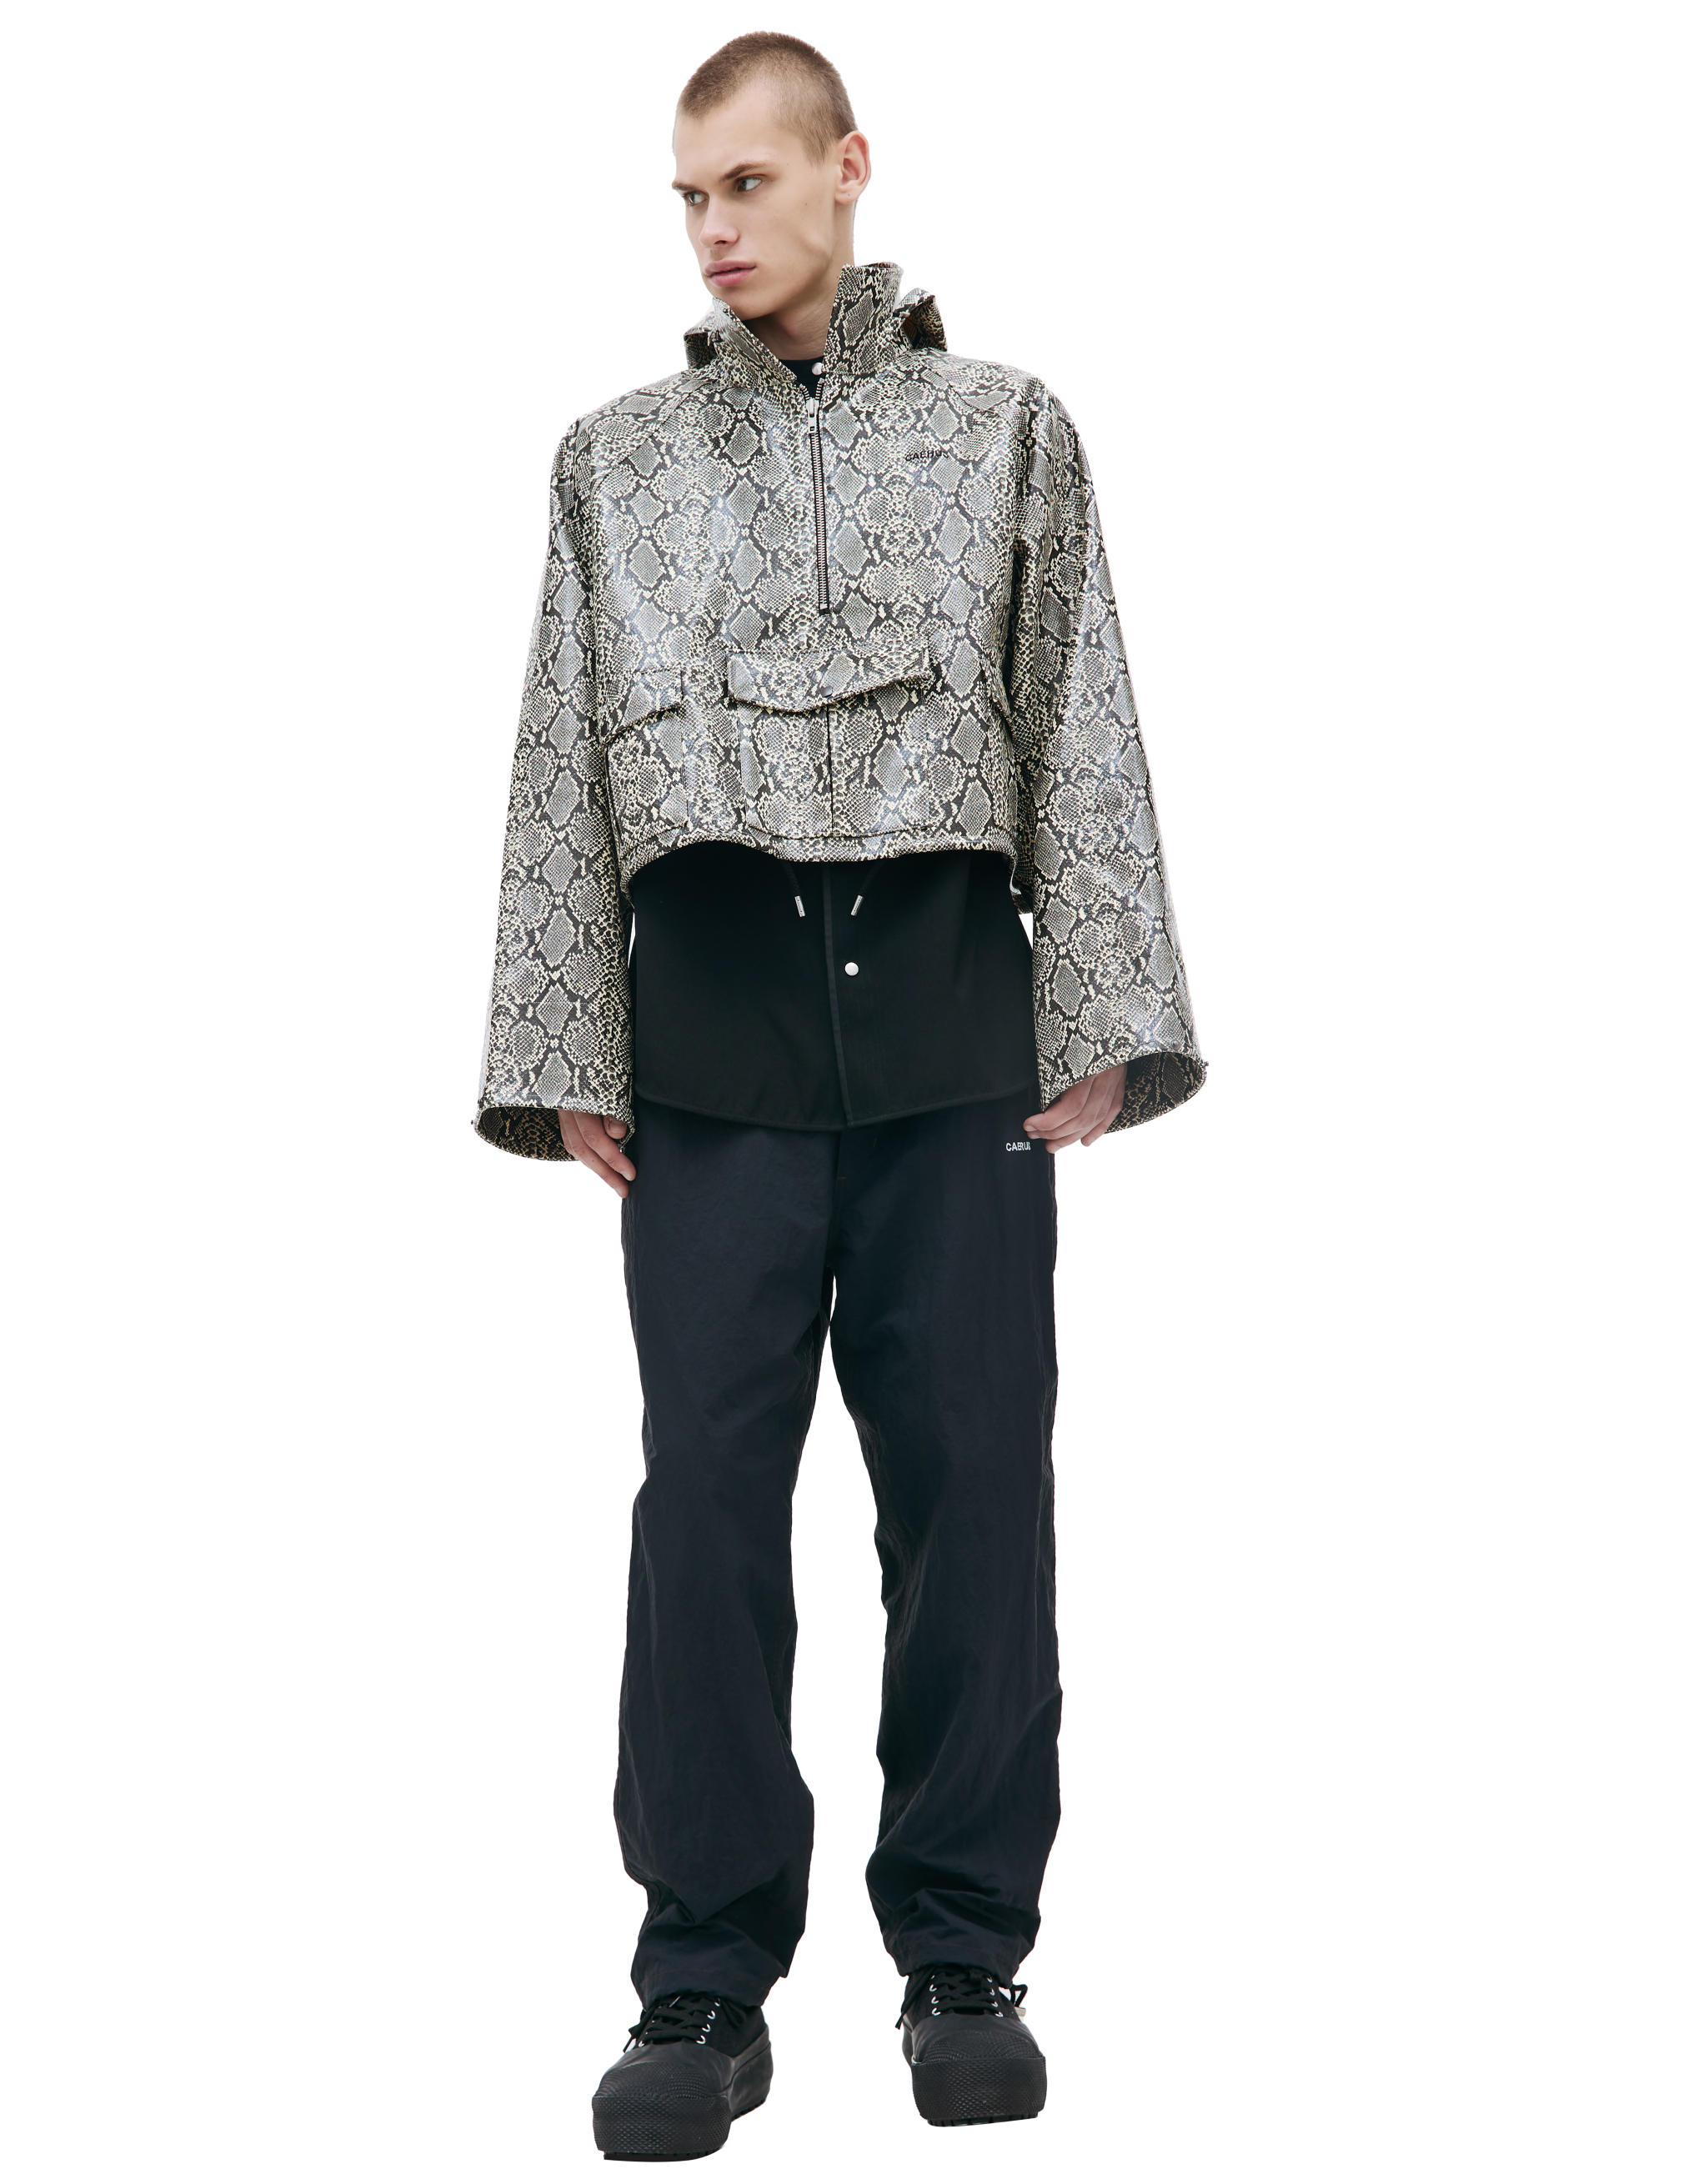 Куртка - анорак с анималистичным принтом CAERUS JK-001/BEIGE, размер 3